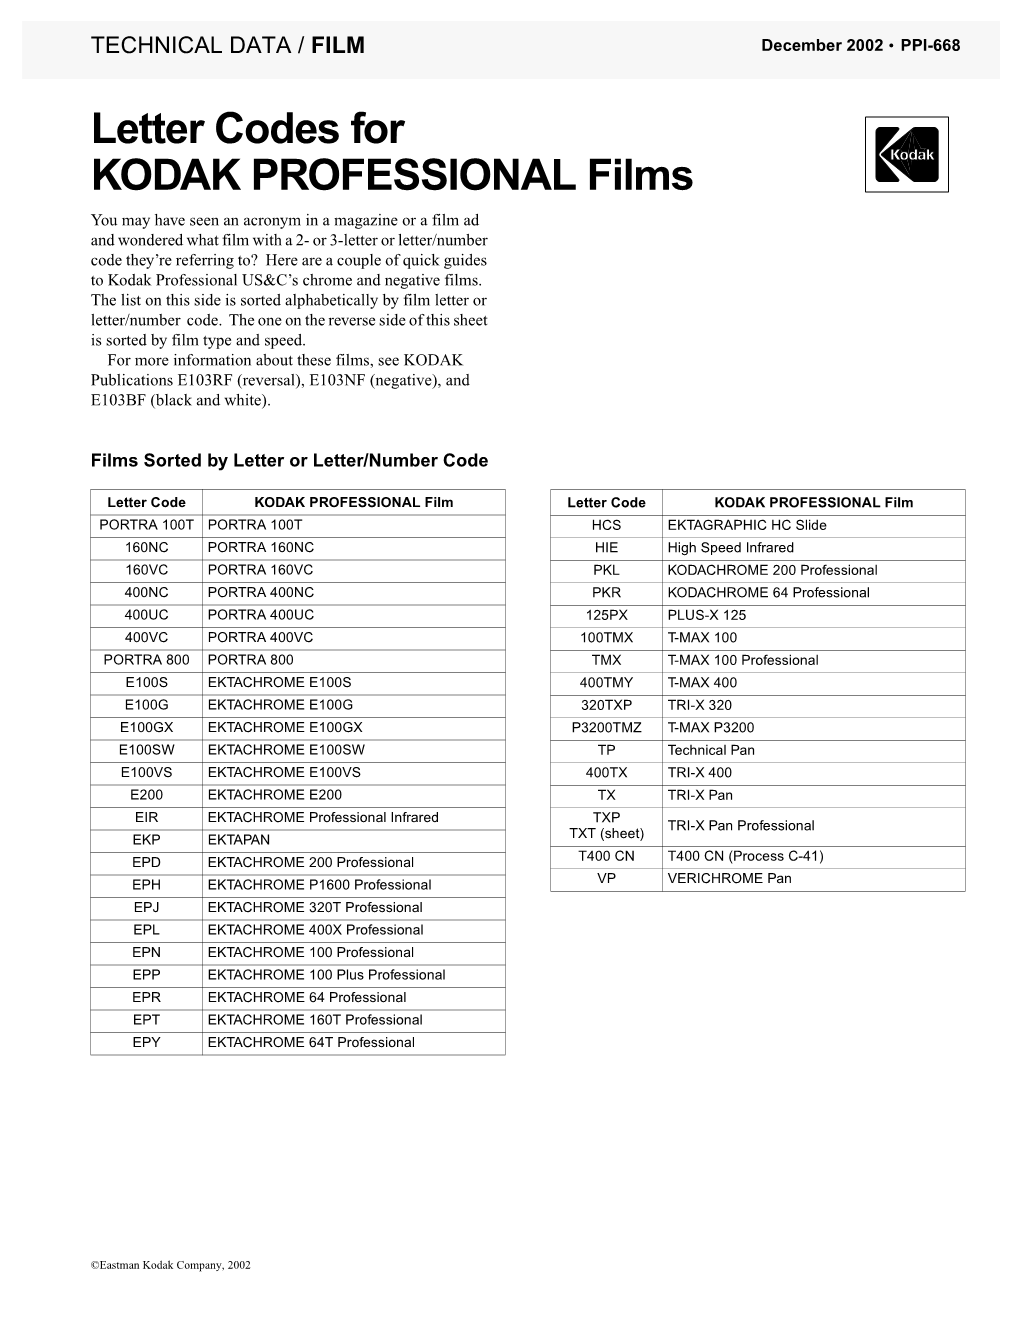 Letter Codes for KODAK PROFESSIONAL Films